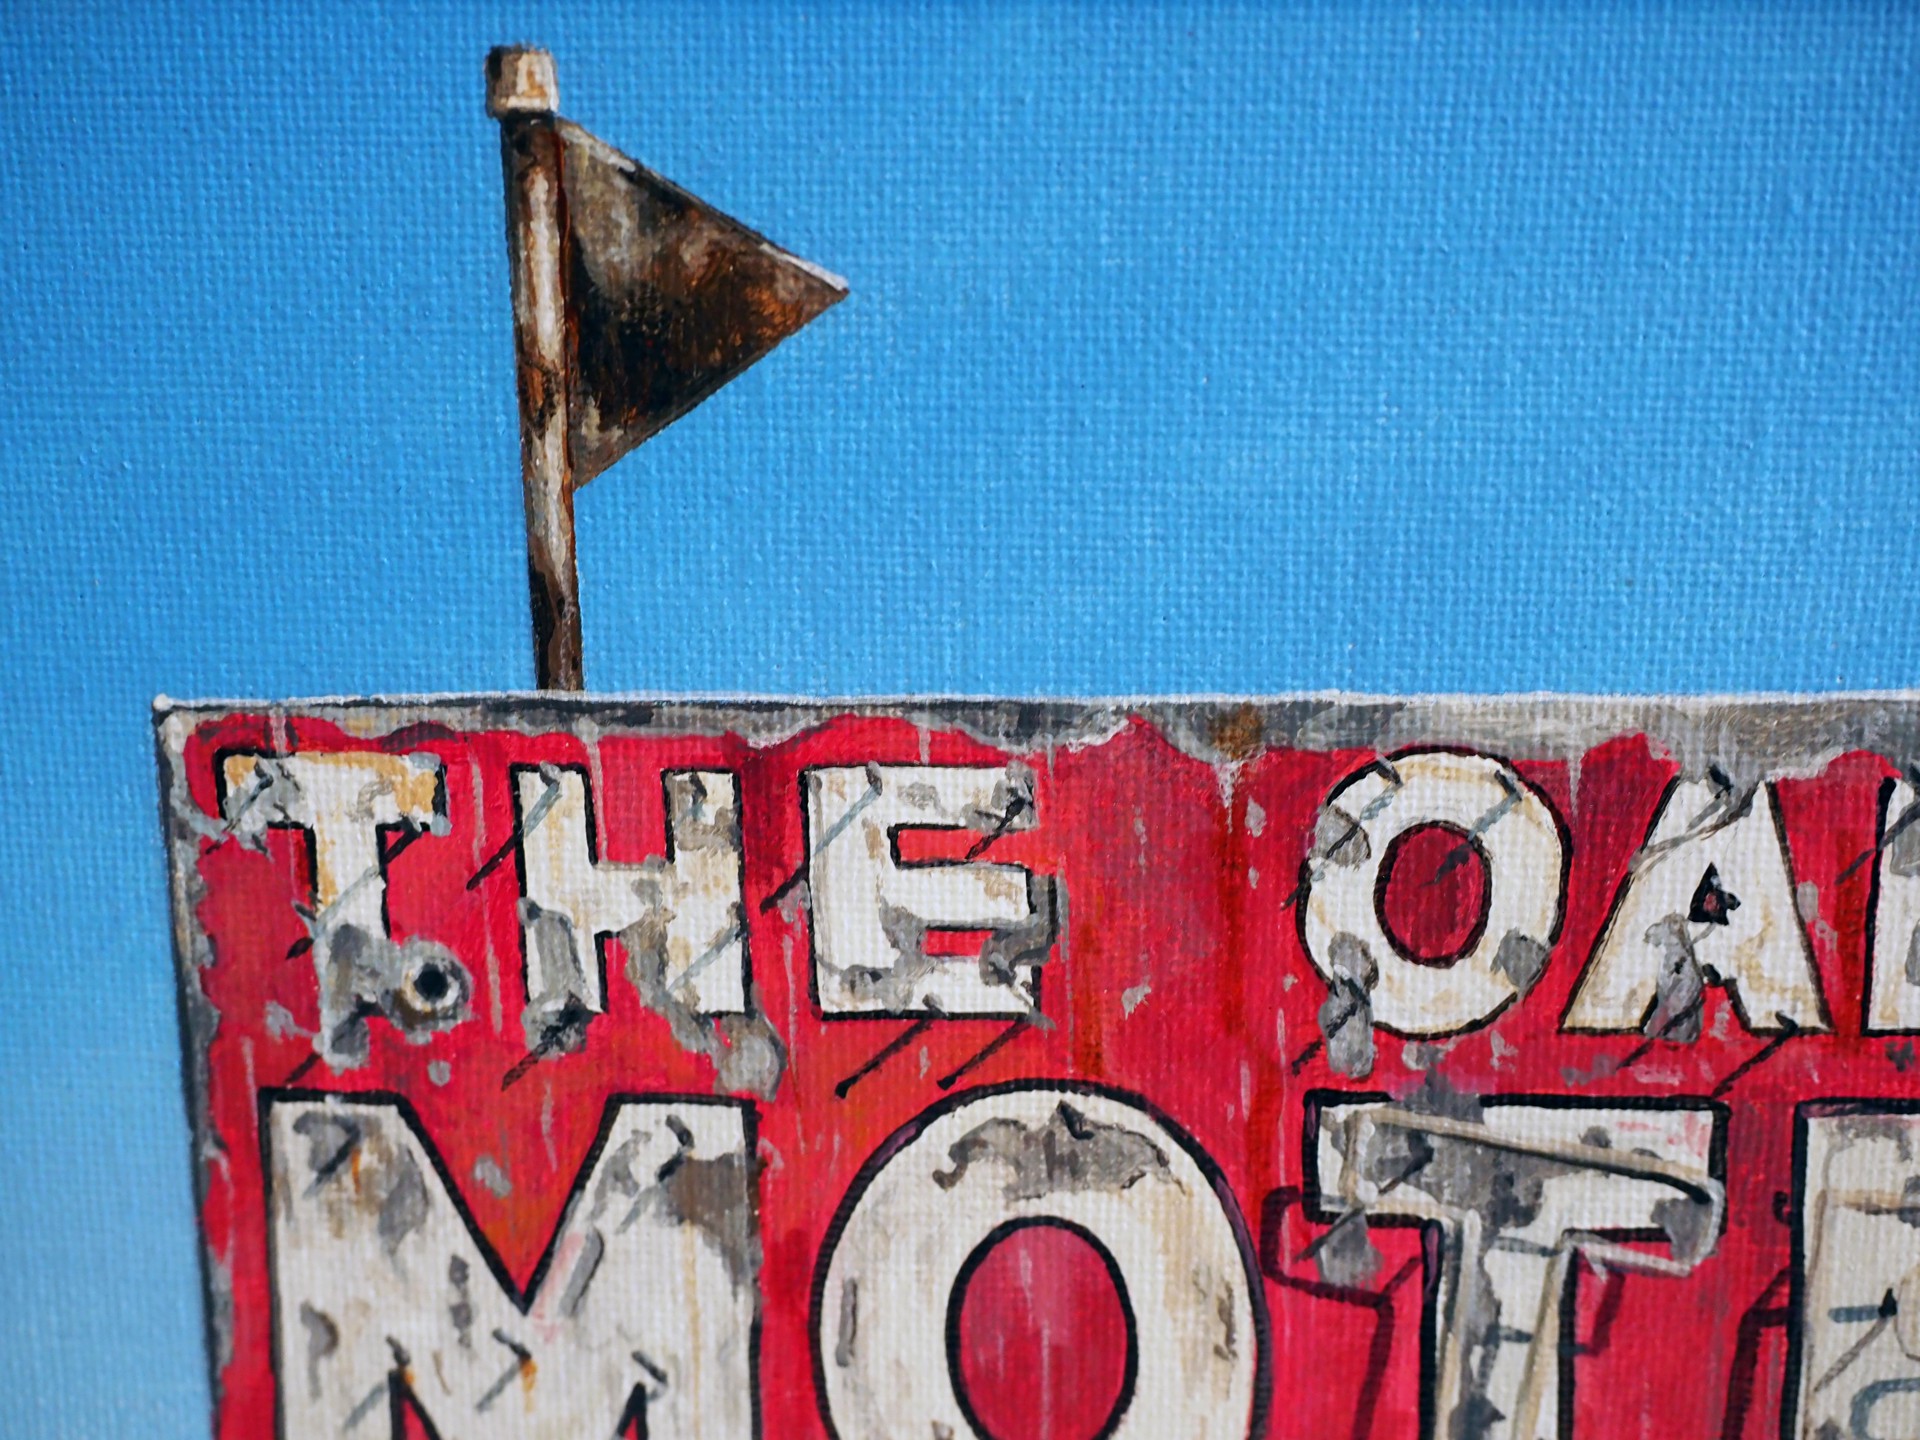 The Oakes Motel by John Sharp